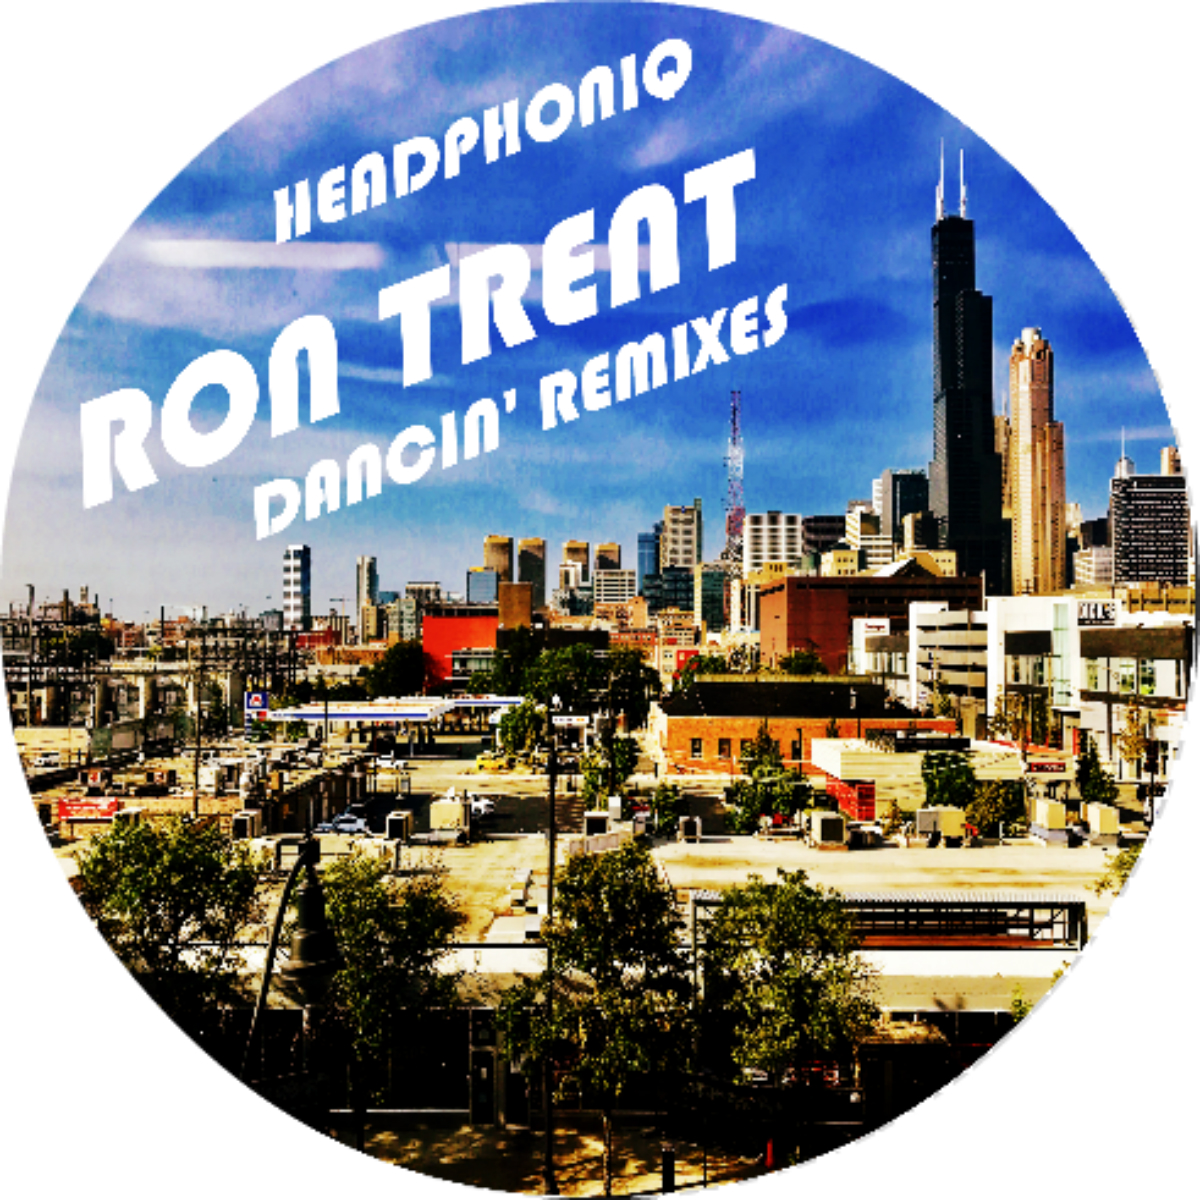 Ron Trent/DANCIN' REMIXES 12"